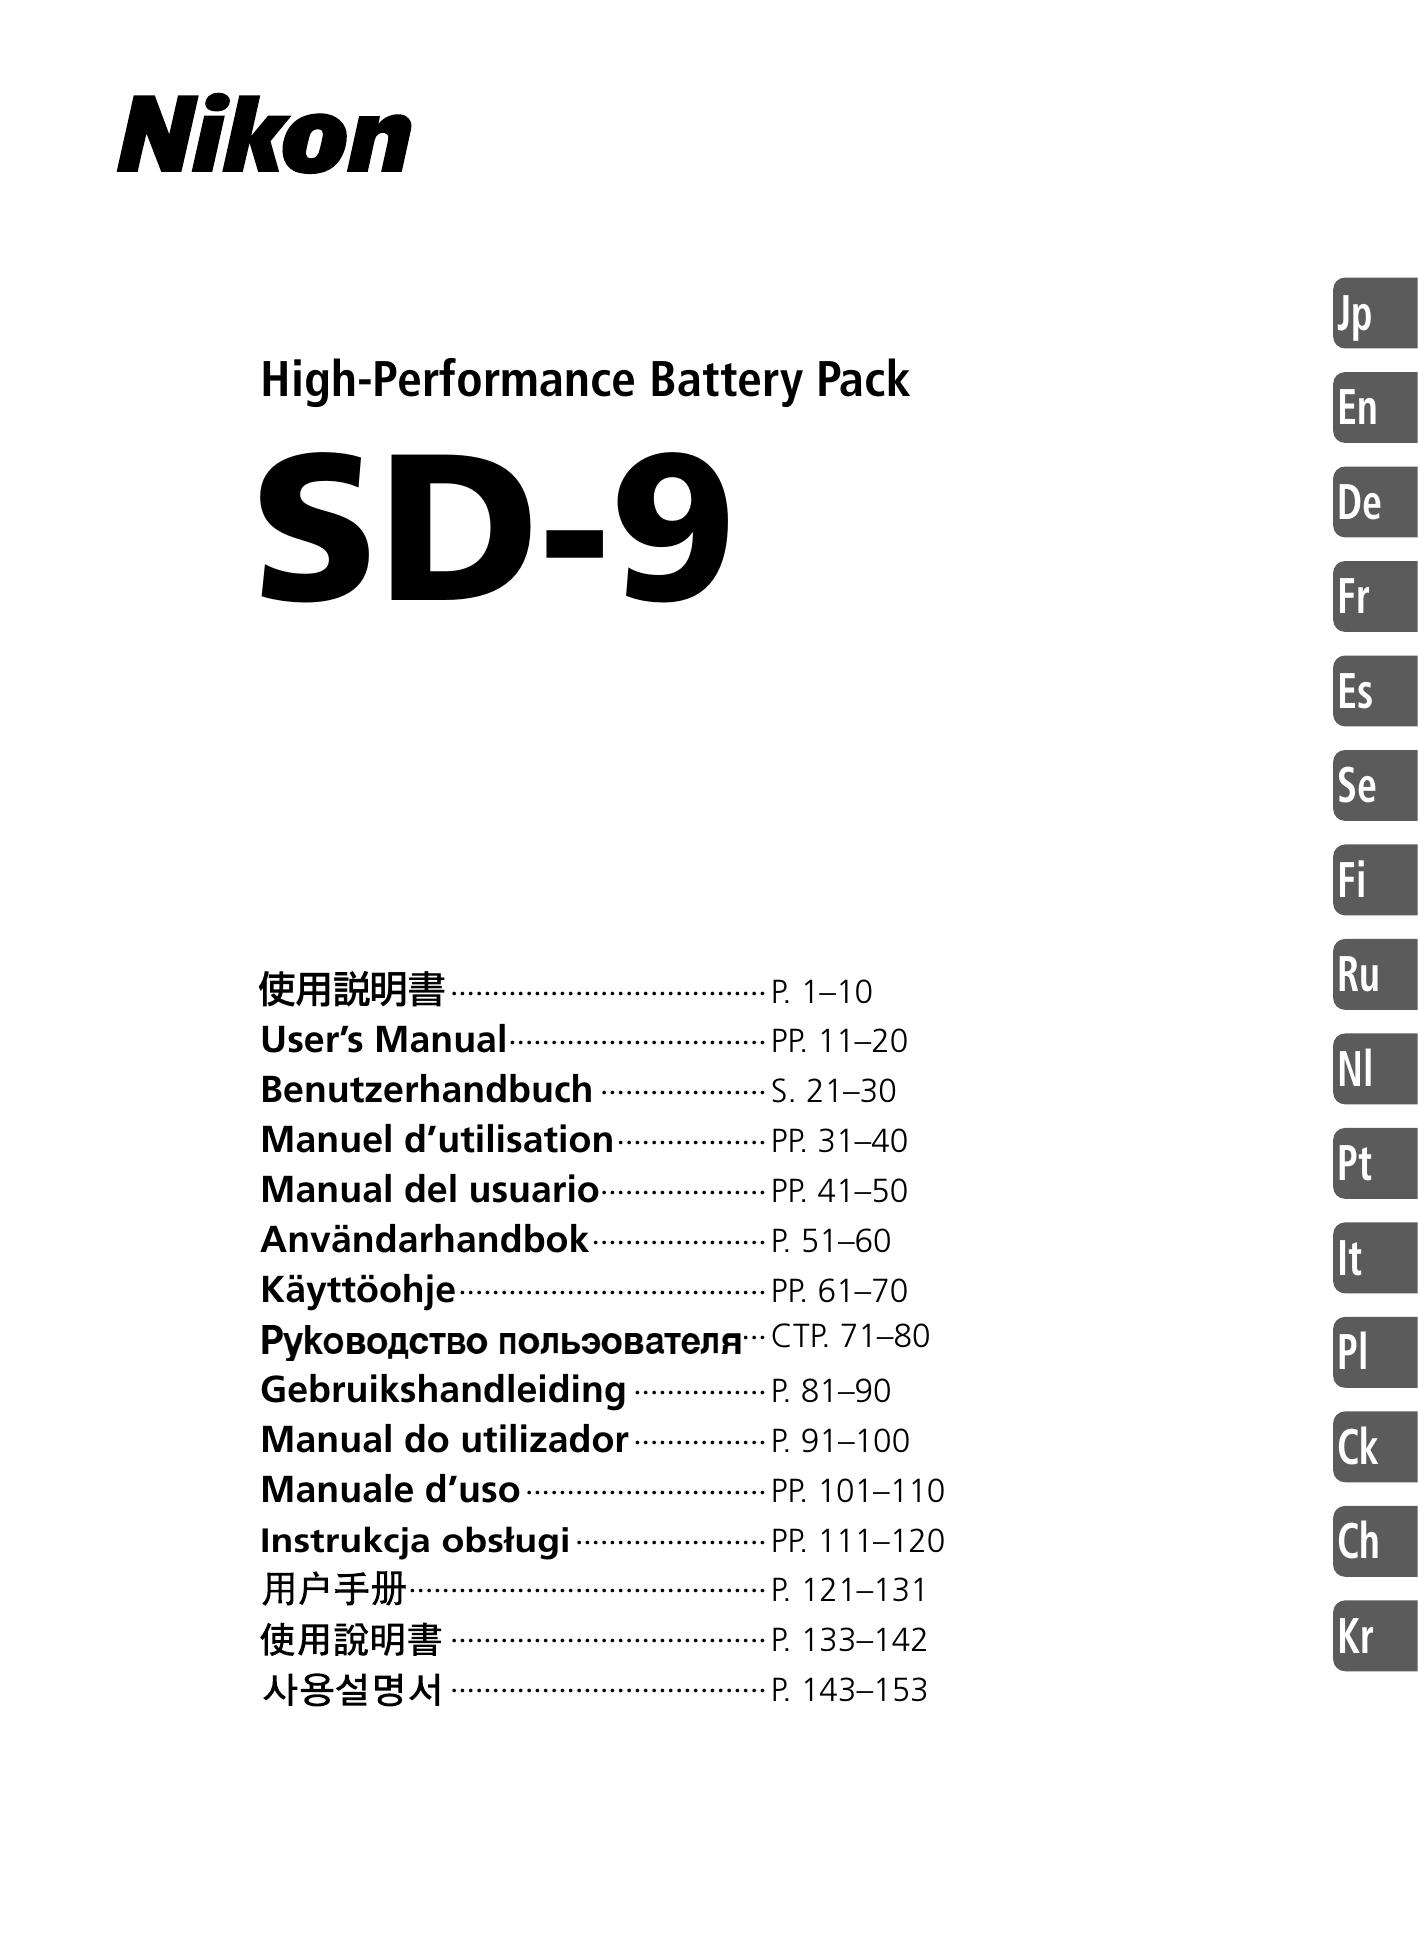 Nikon SD-9 Camera Accessories User Manual